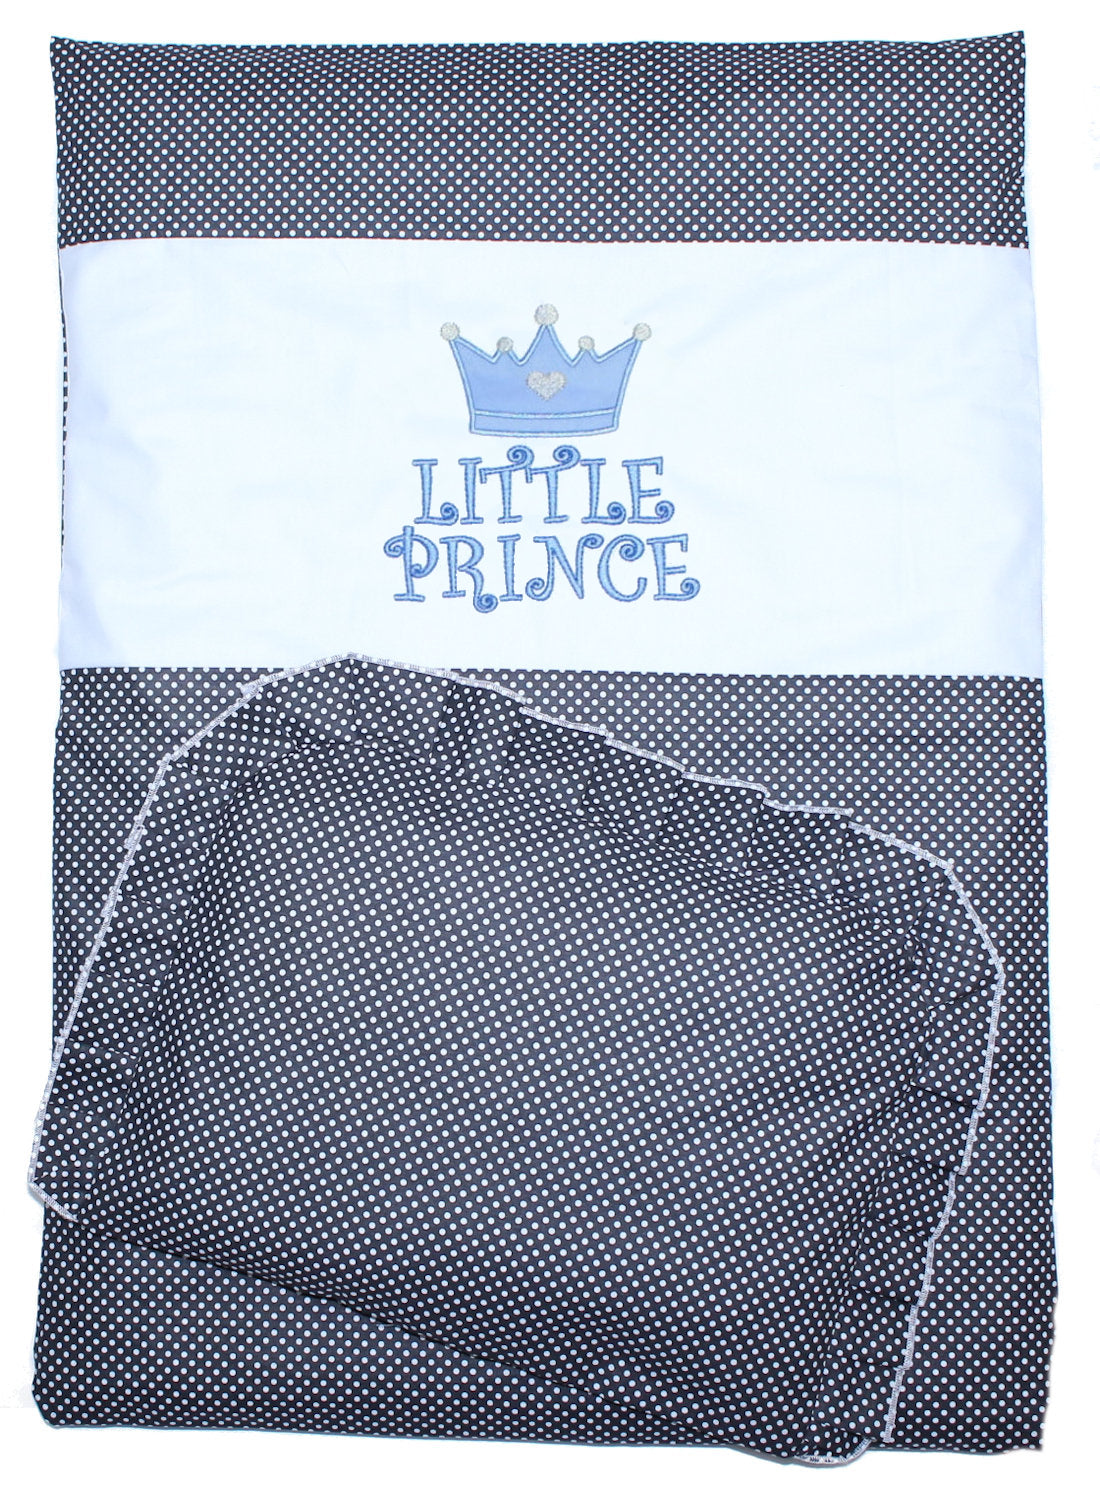 2- 4tlg Kinderwagenset - Prince - Punkten Schwarz - Bettwäsche für Kinderwagen Bezüge Decke Kissen